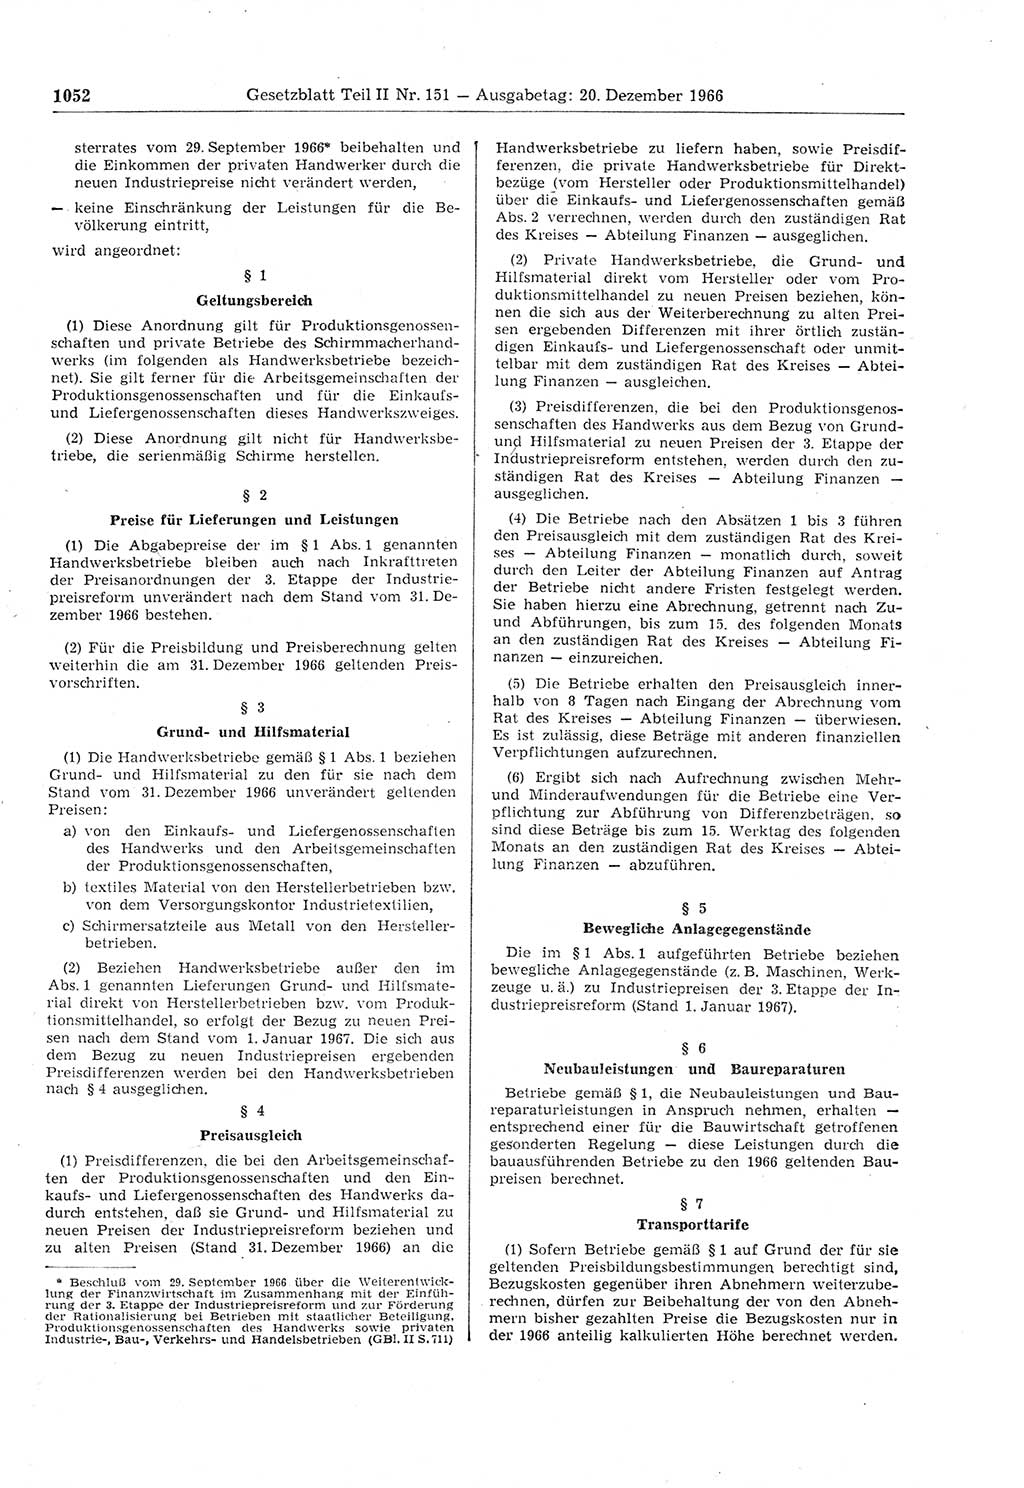 Gesetzblatt (GBl.) der Deutschen Demokratischen Republik (DDR) Teil ⅠⅠ 1966, Seite 1052 (GBl. DDR ⅠⅠ 1966, S. 1052)